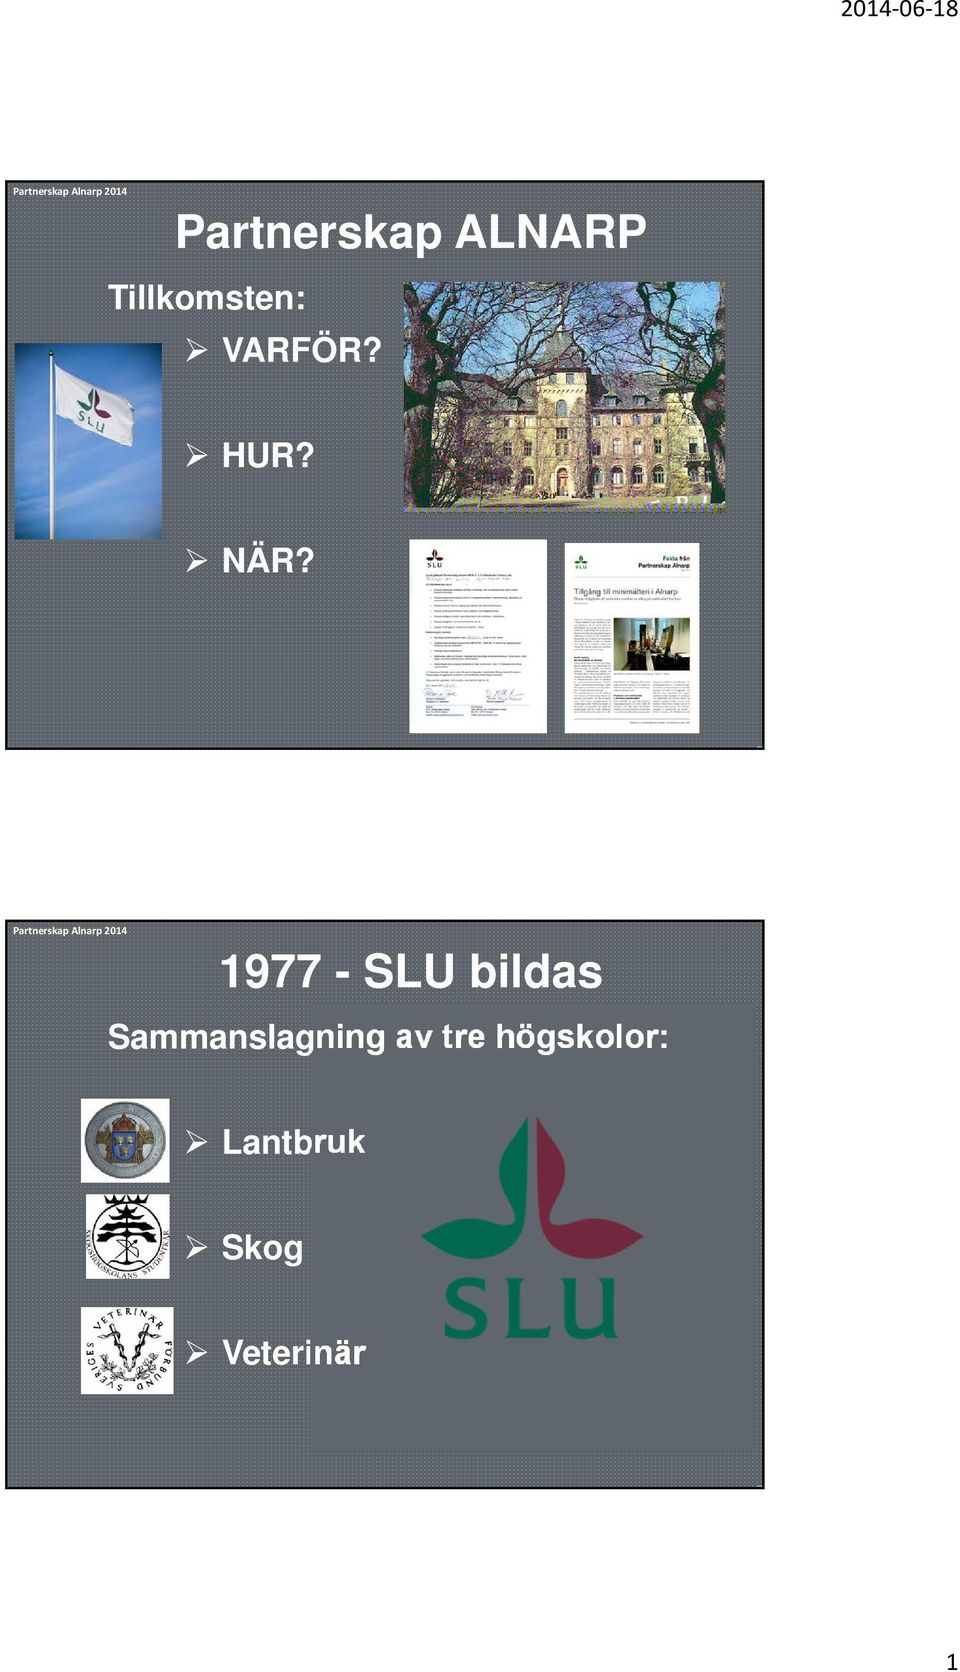 1977 - SLU bildas